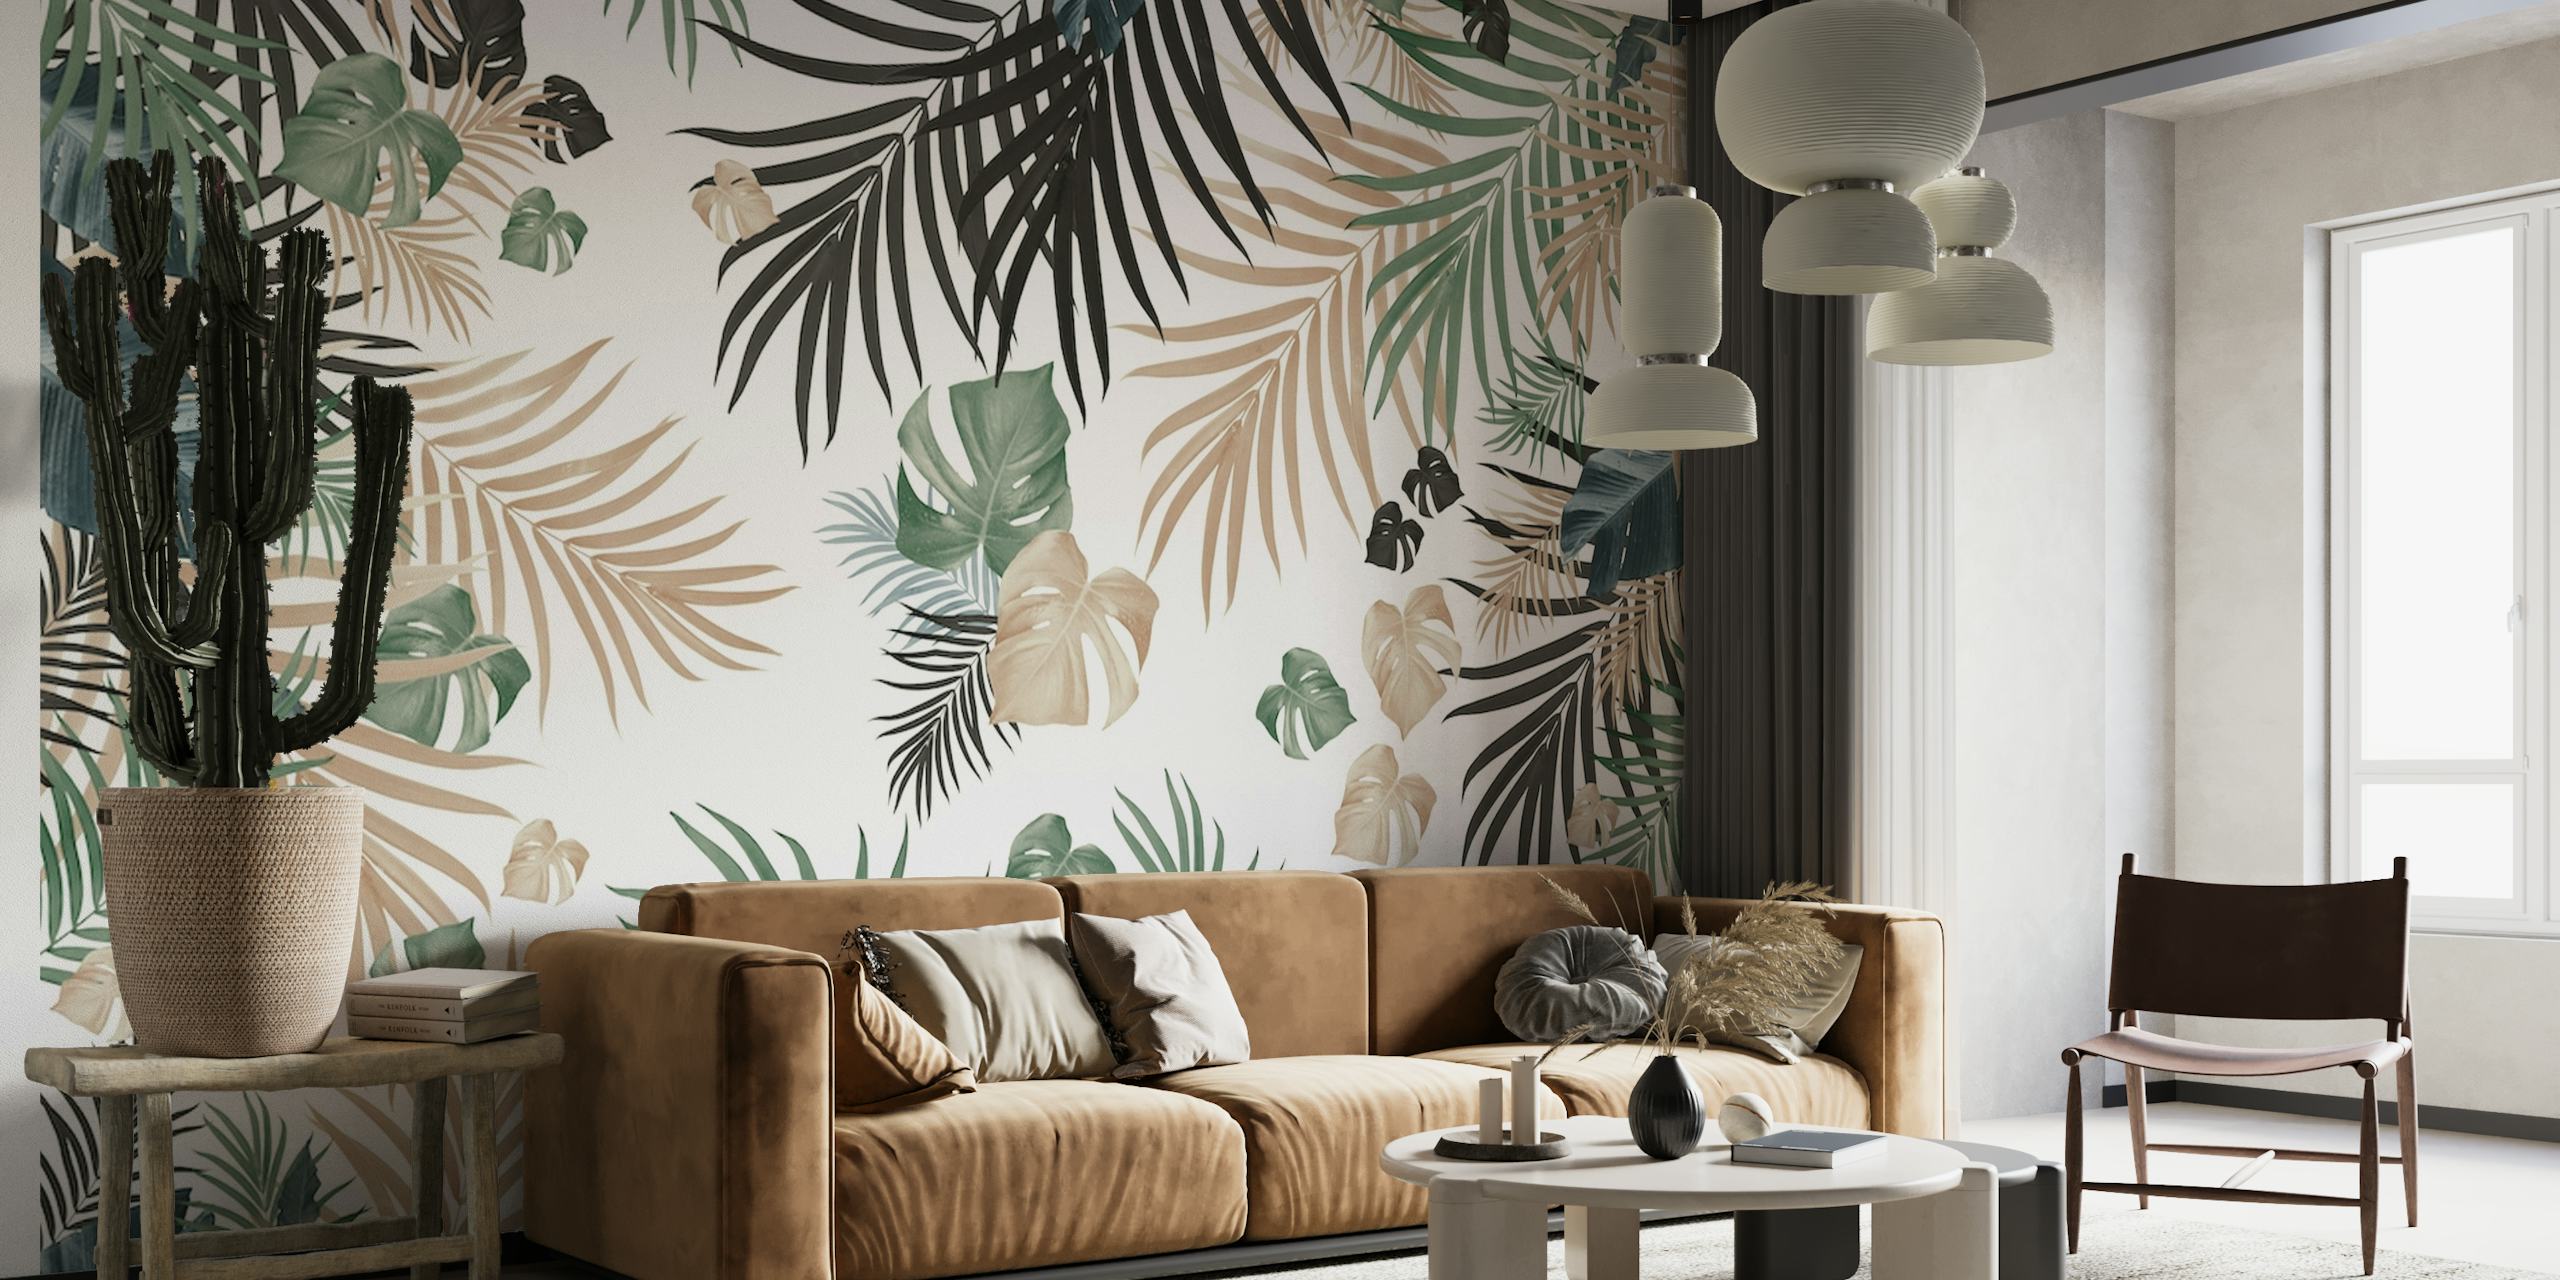 Fotomural vinílico de parede de folhas de selva tropical com uma variedade de folhagens verdes